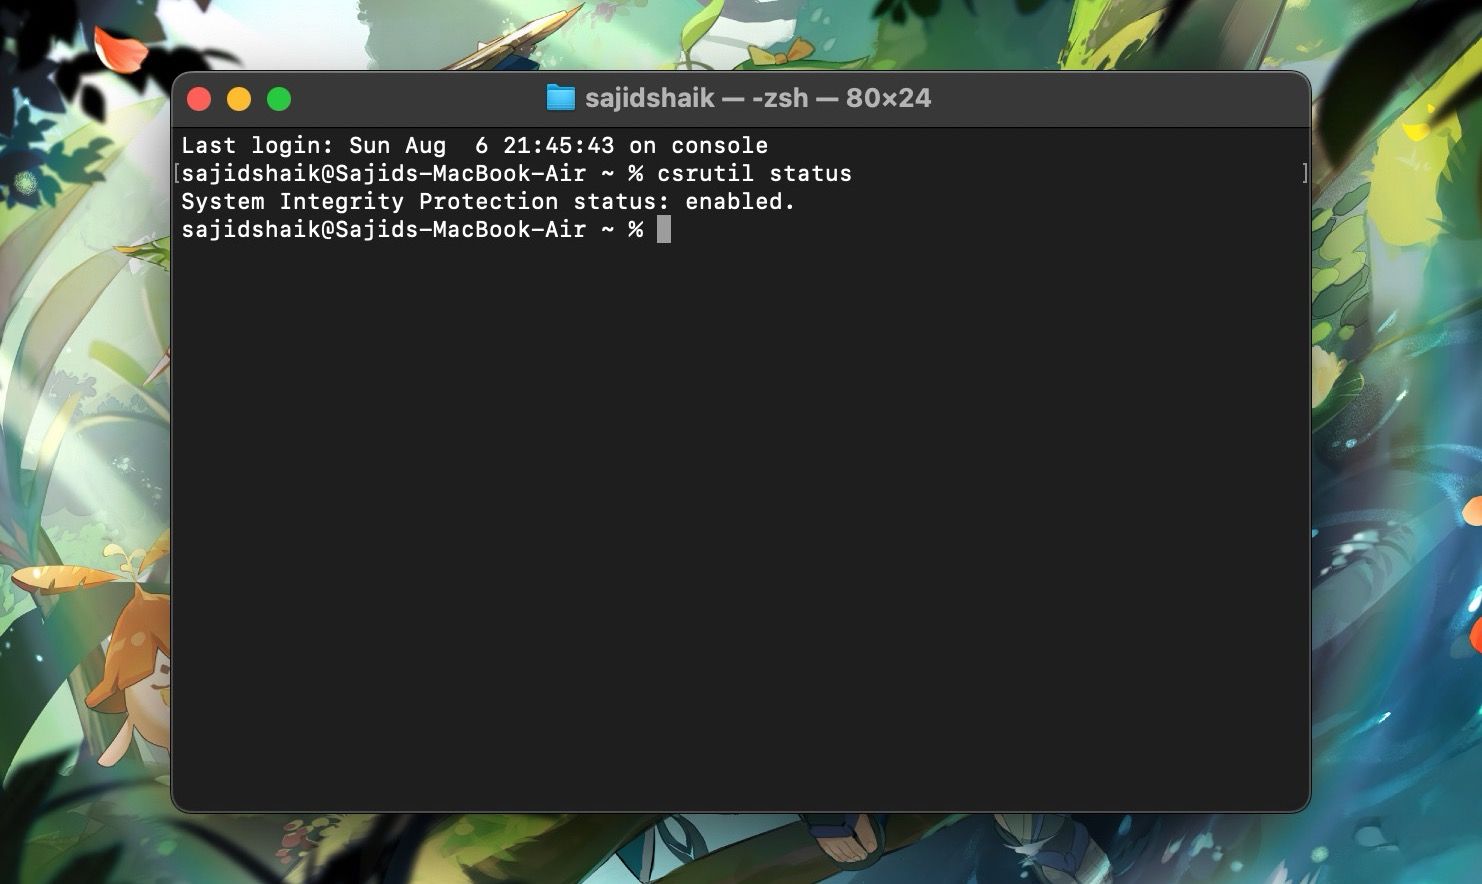 csrutil status command in macOS Terminal to check SIP status of Mac